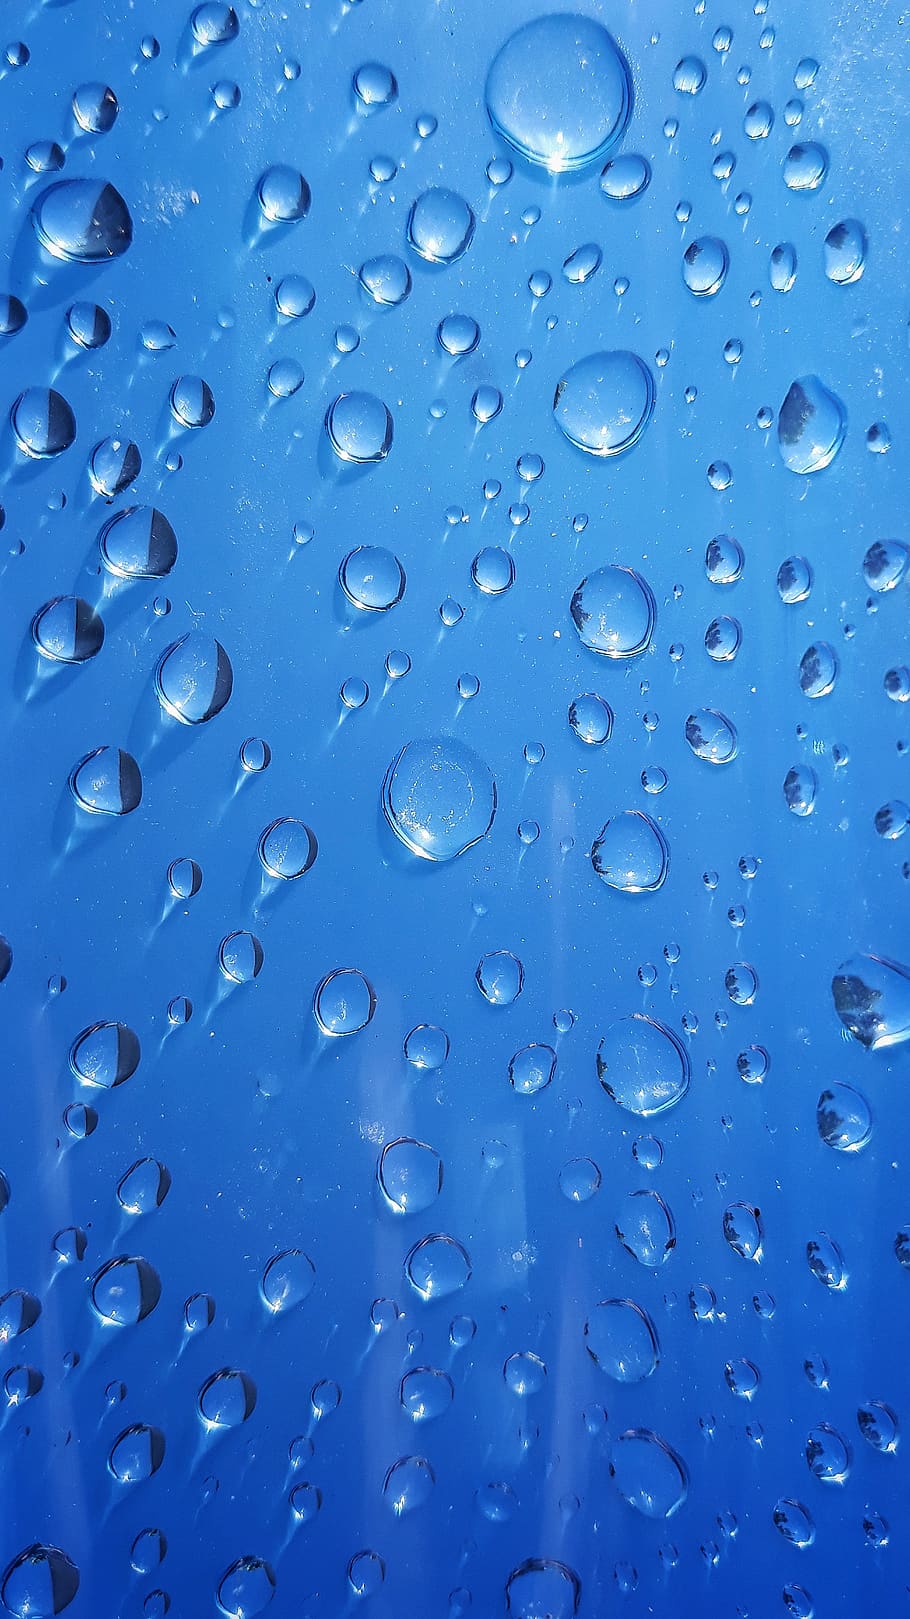 wet, rain, dew, drop, turquoise, waterdrop, liquid, clean, purity